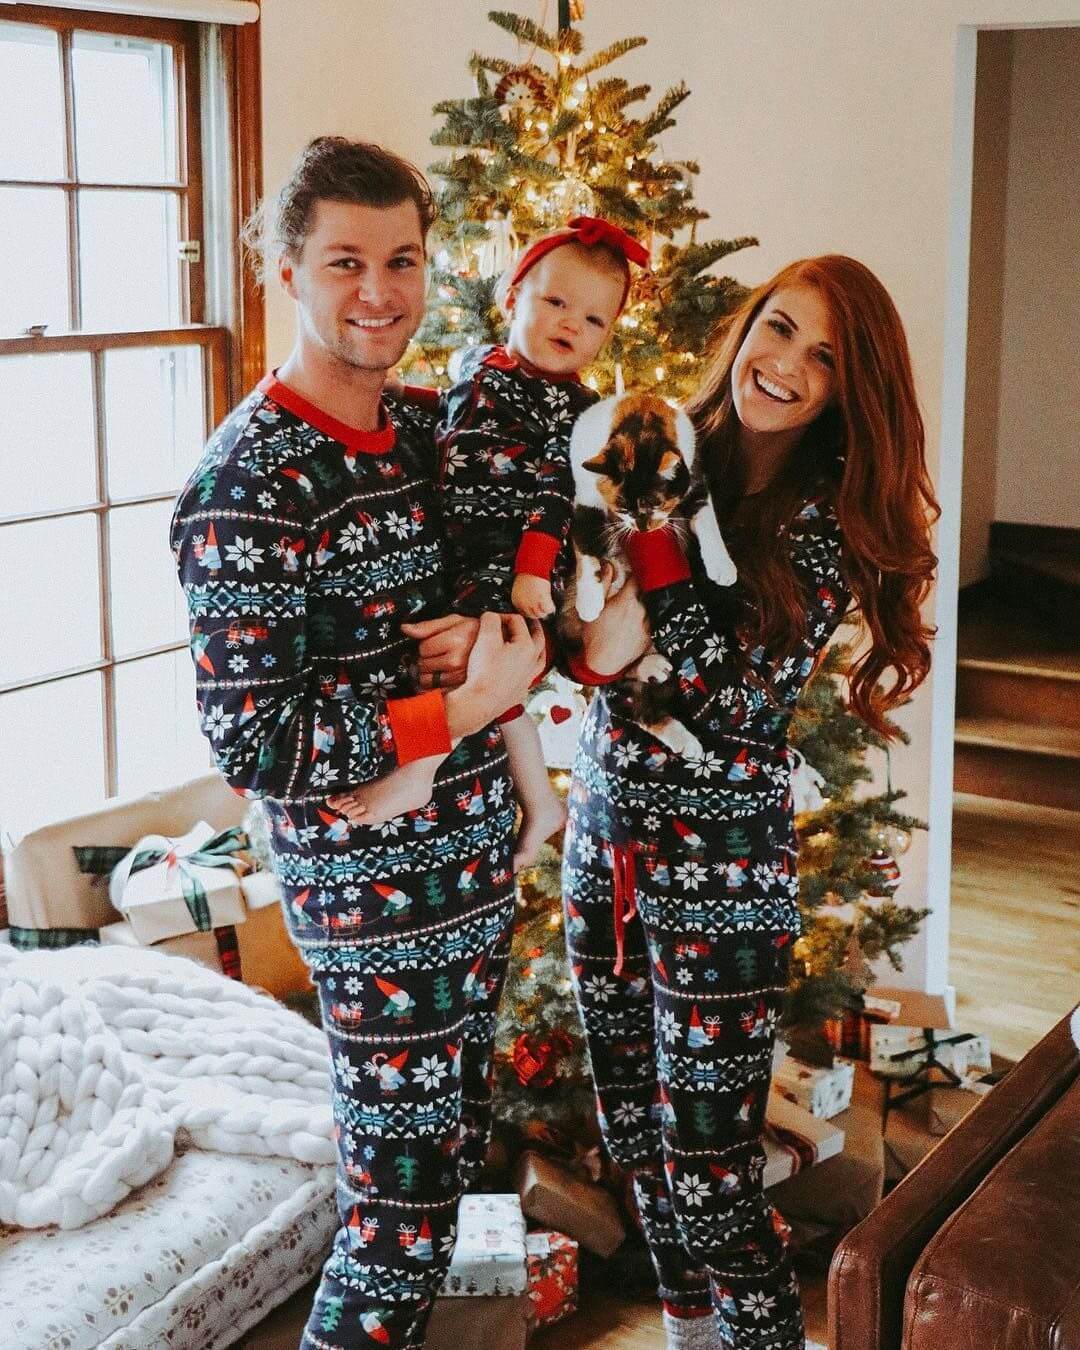 Cute Santa and Snowflake Print Family Matching Pajamas Sets